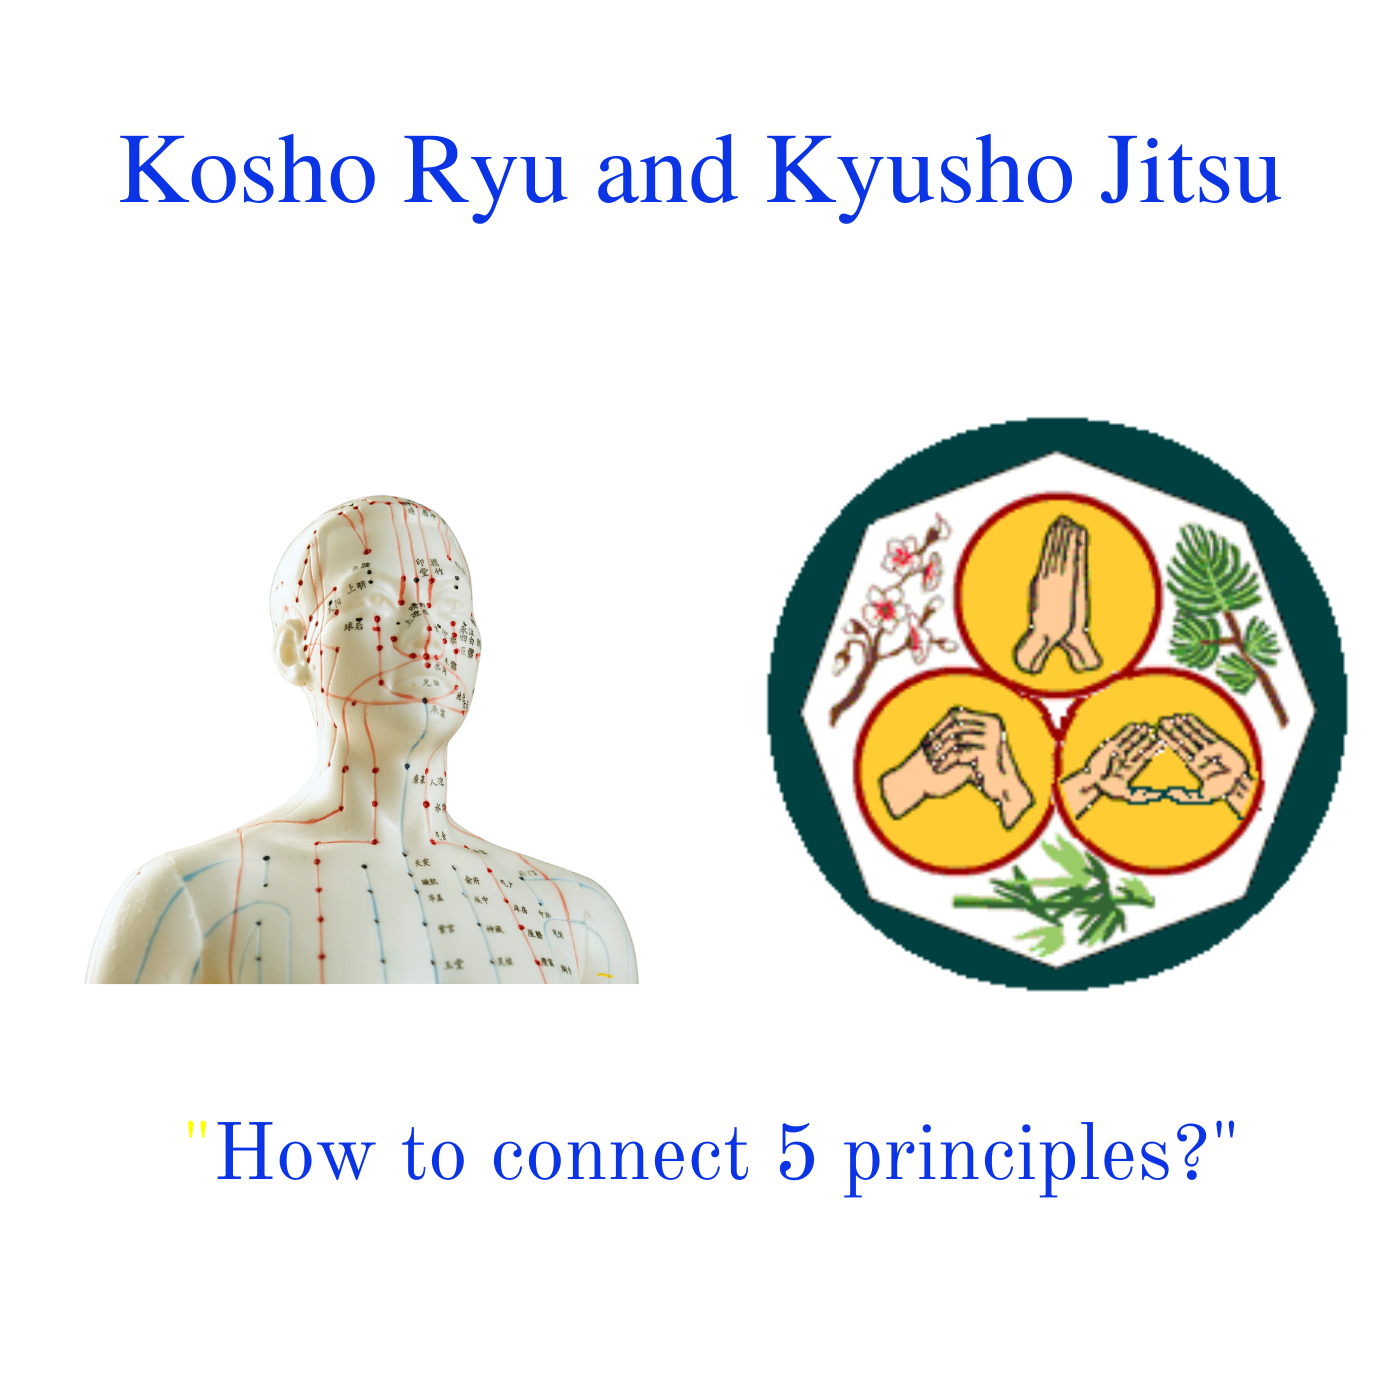 Kosho Ryu and Kyusho Jitsu